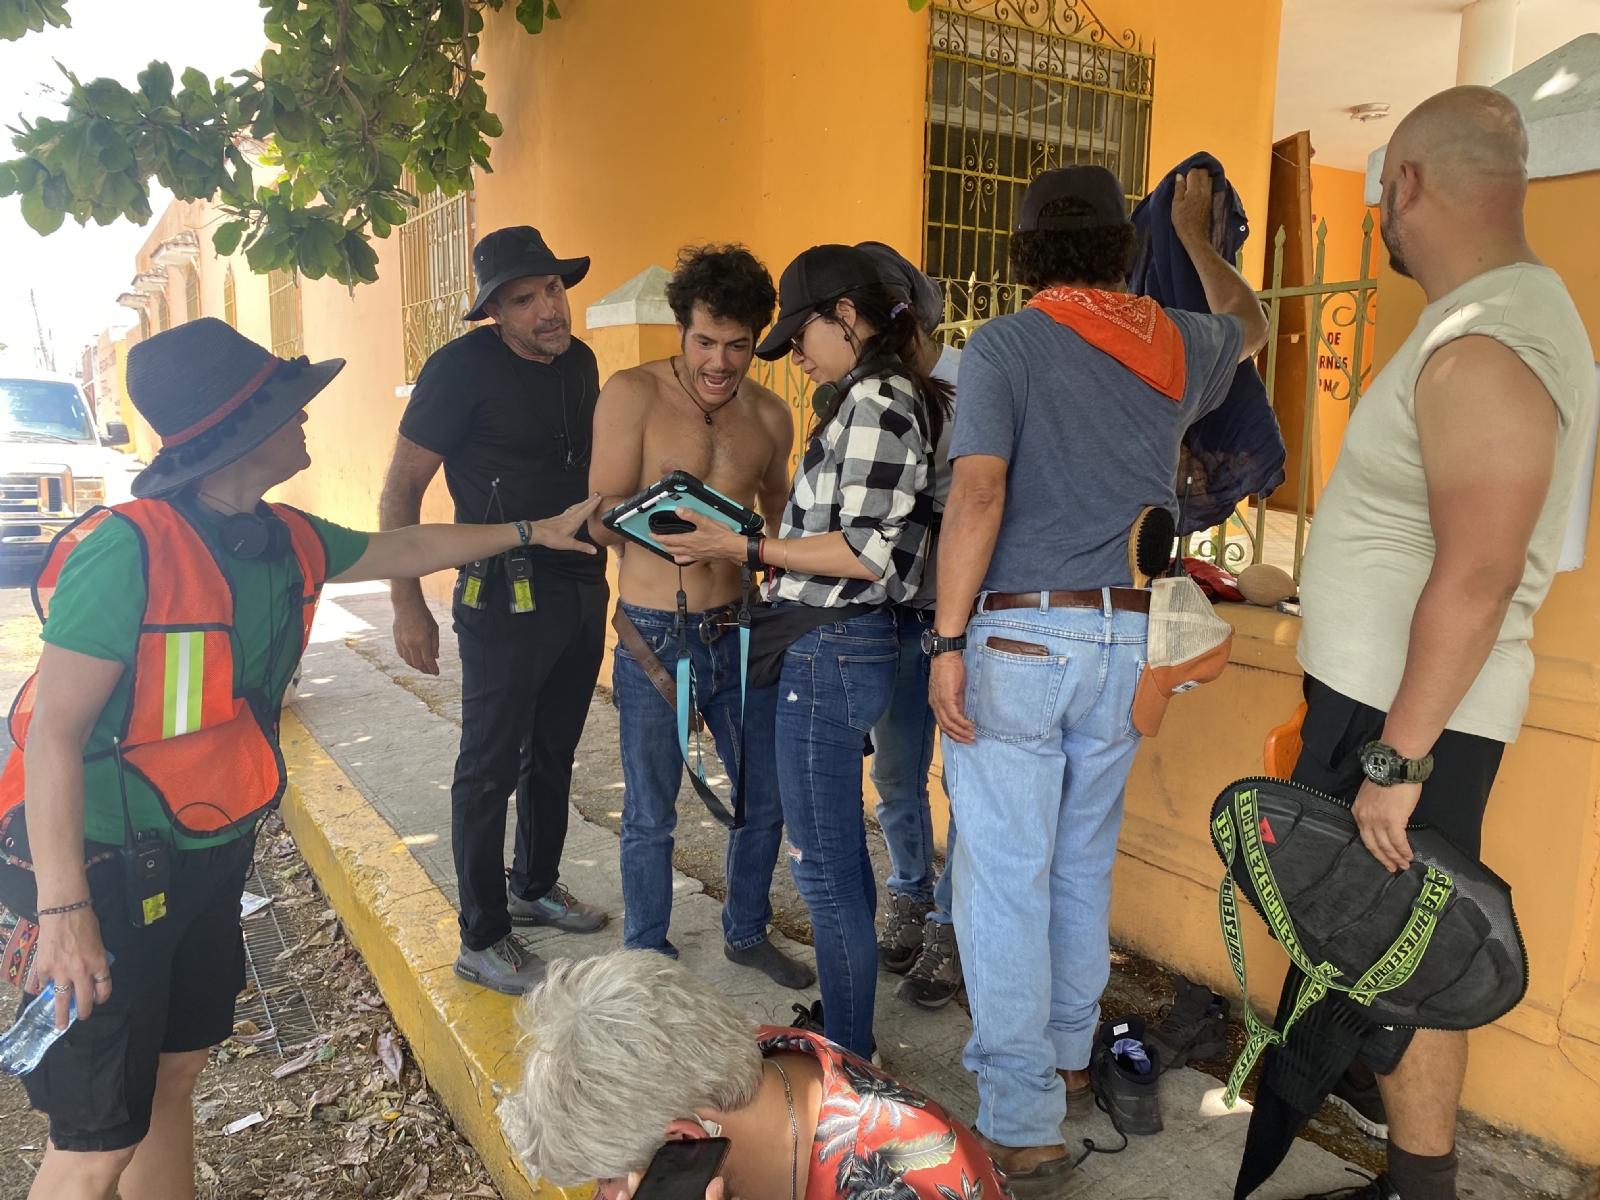 Bandidos ha causado el cierre de calles en Mérida